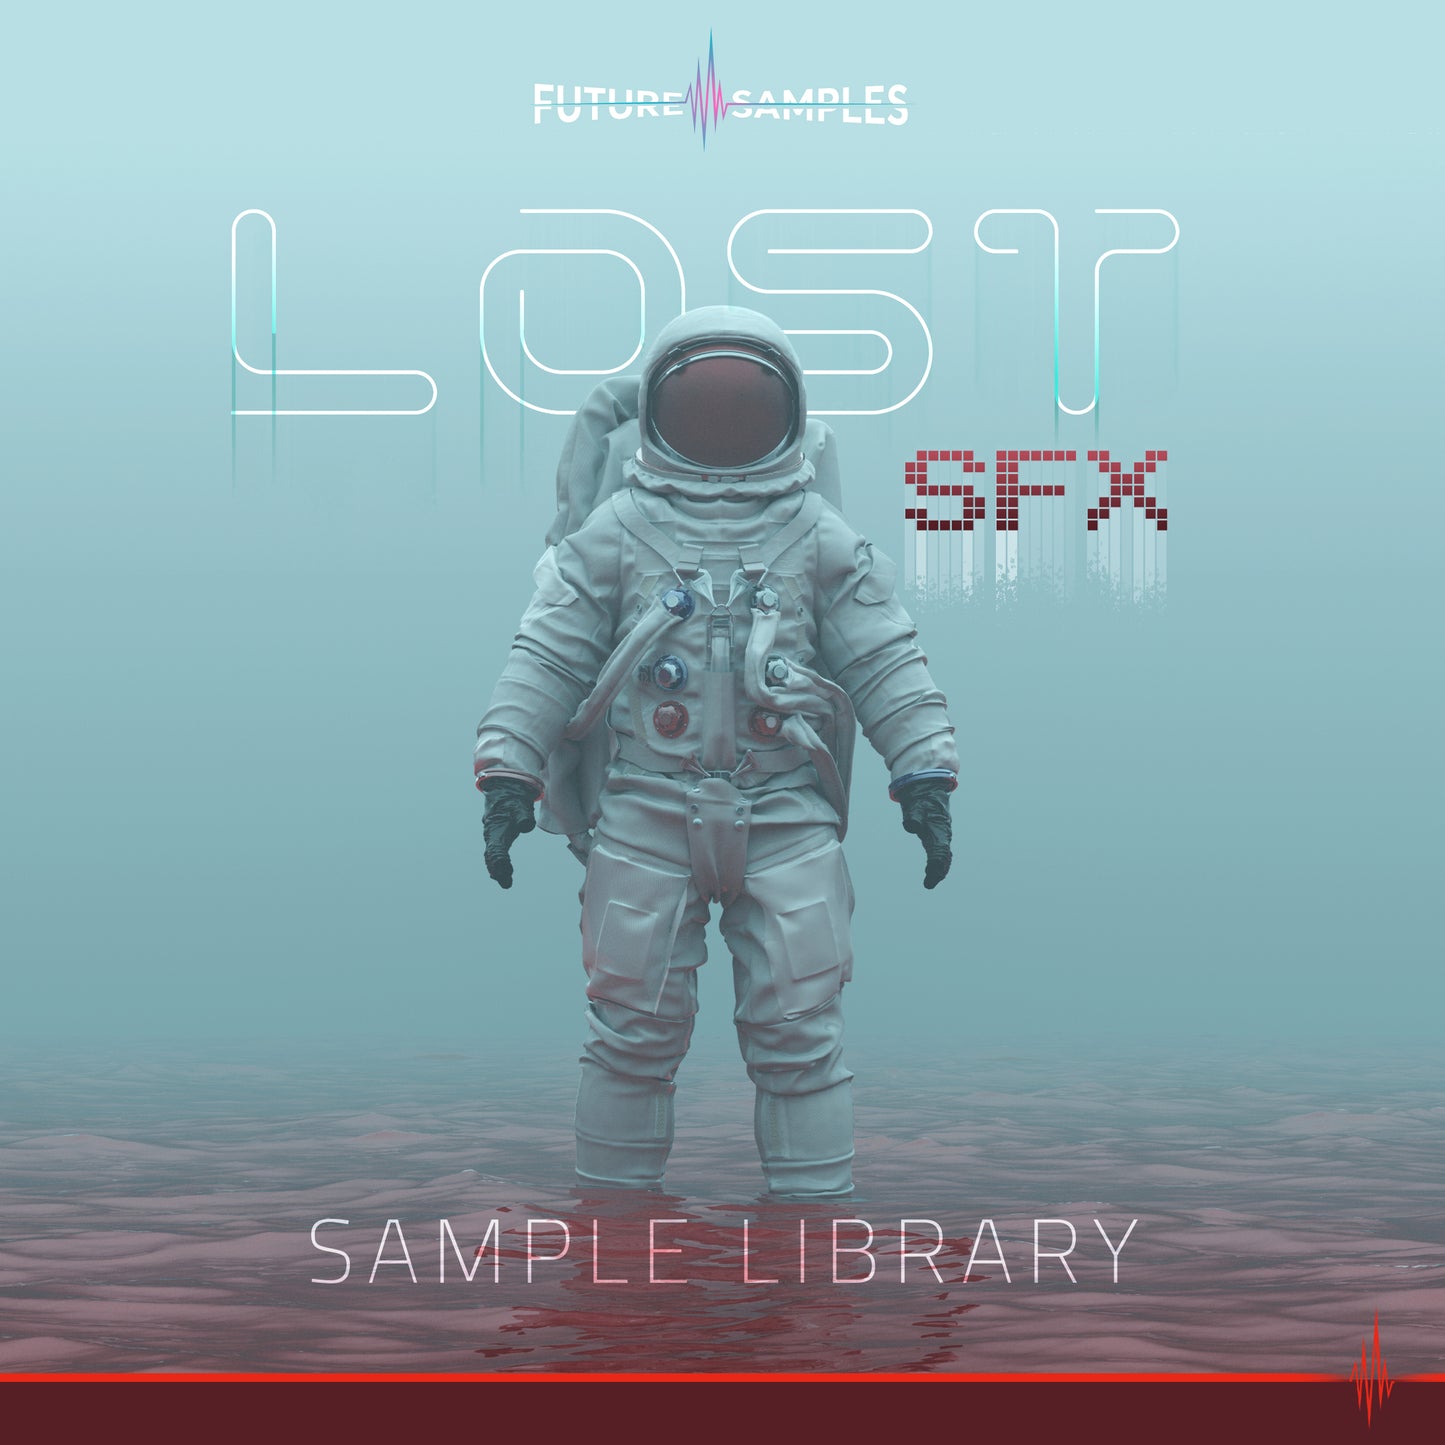 Lost SFX